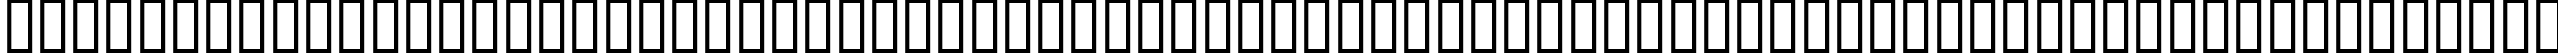 Пример написания английского алфавита шрифтом EuroRoman Oblique